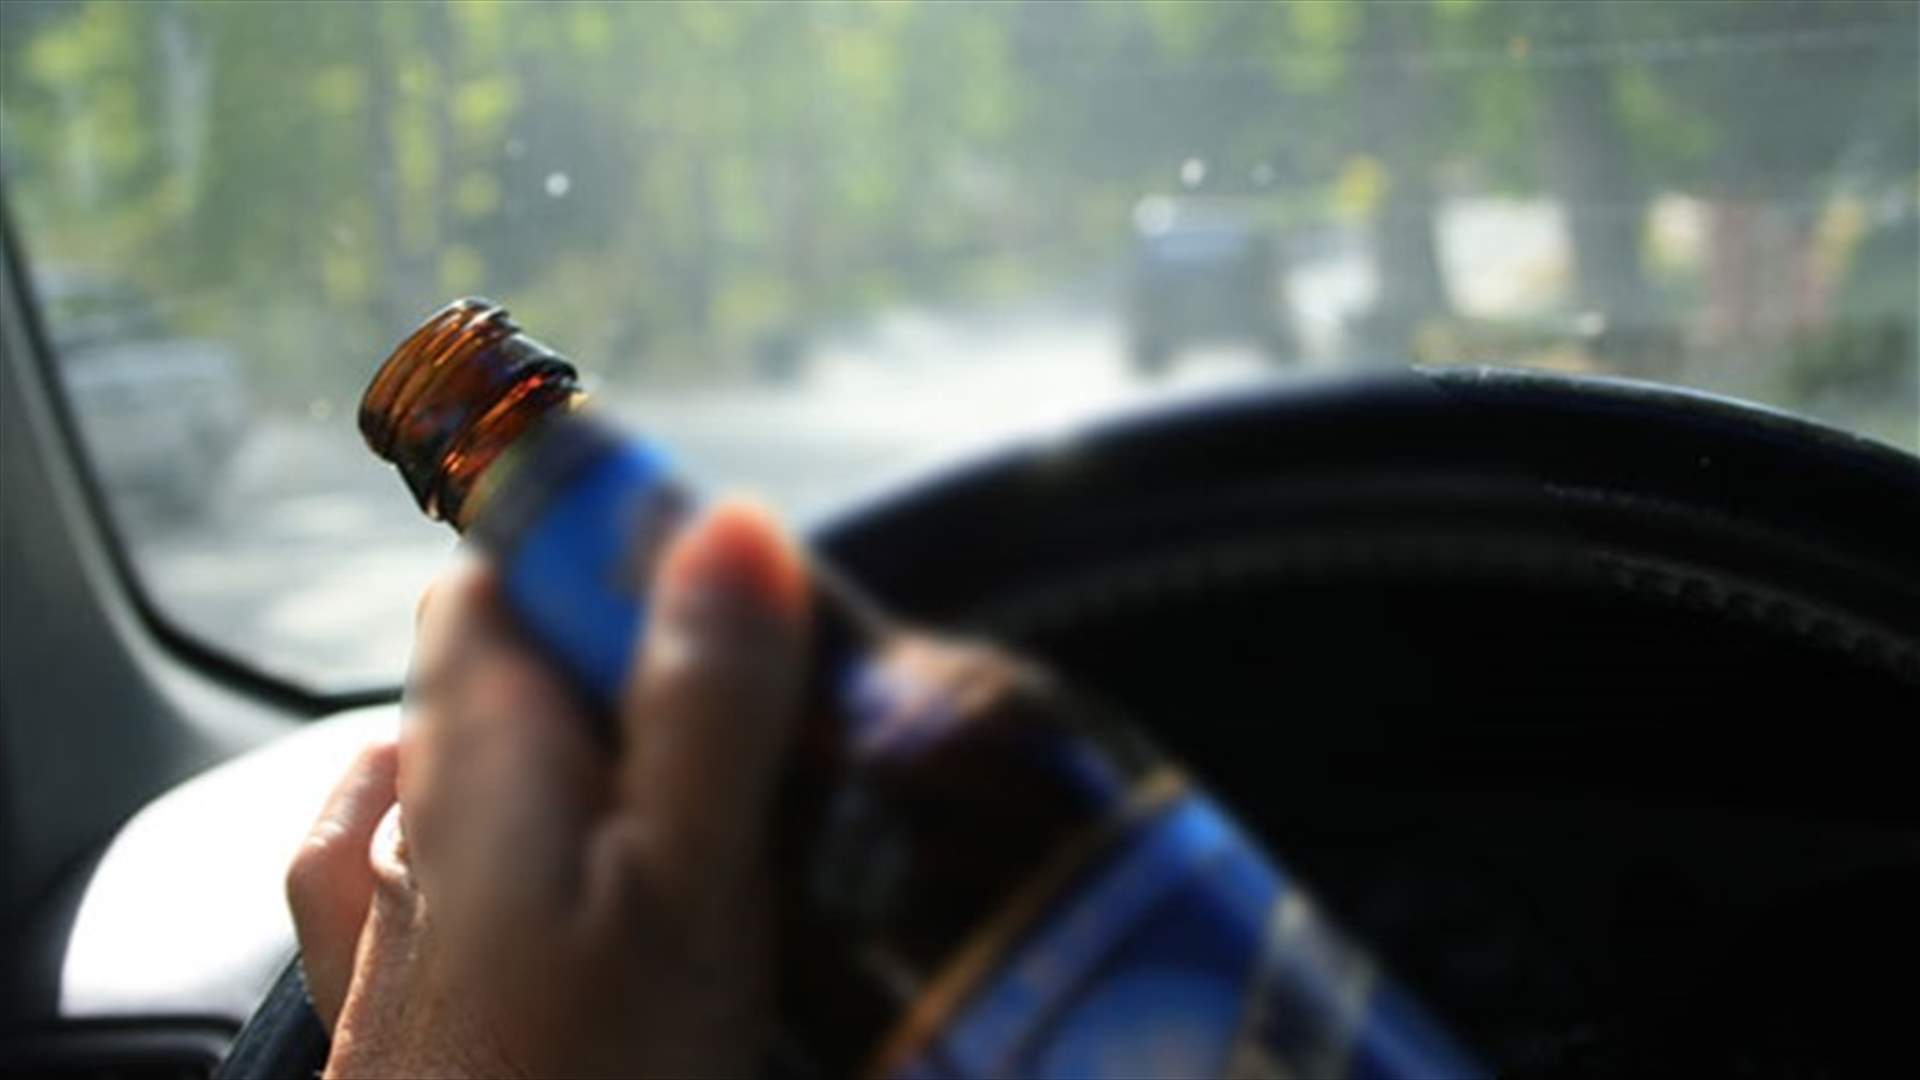  توقيف سائق باص وتغريمه لقيادته تحت تأثير الكحول